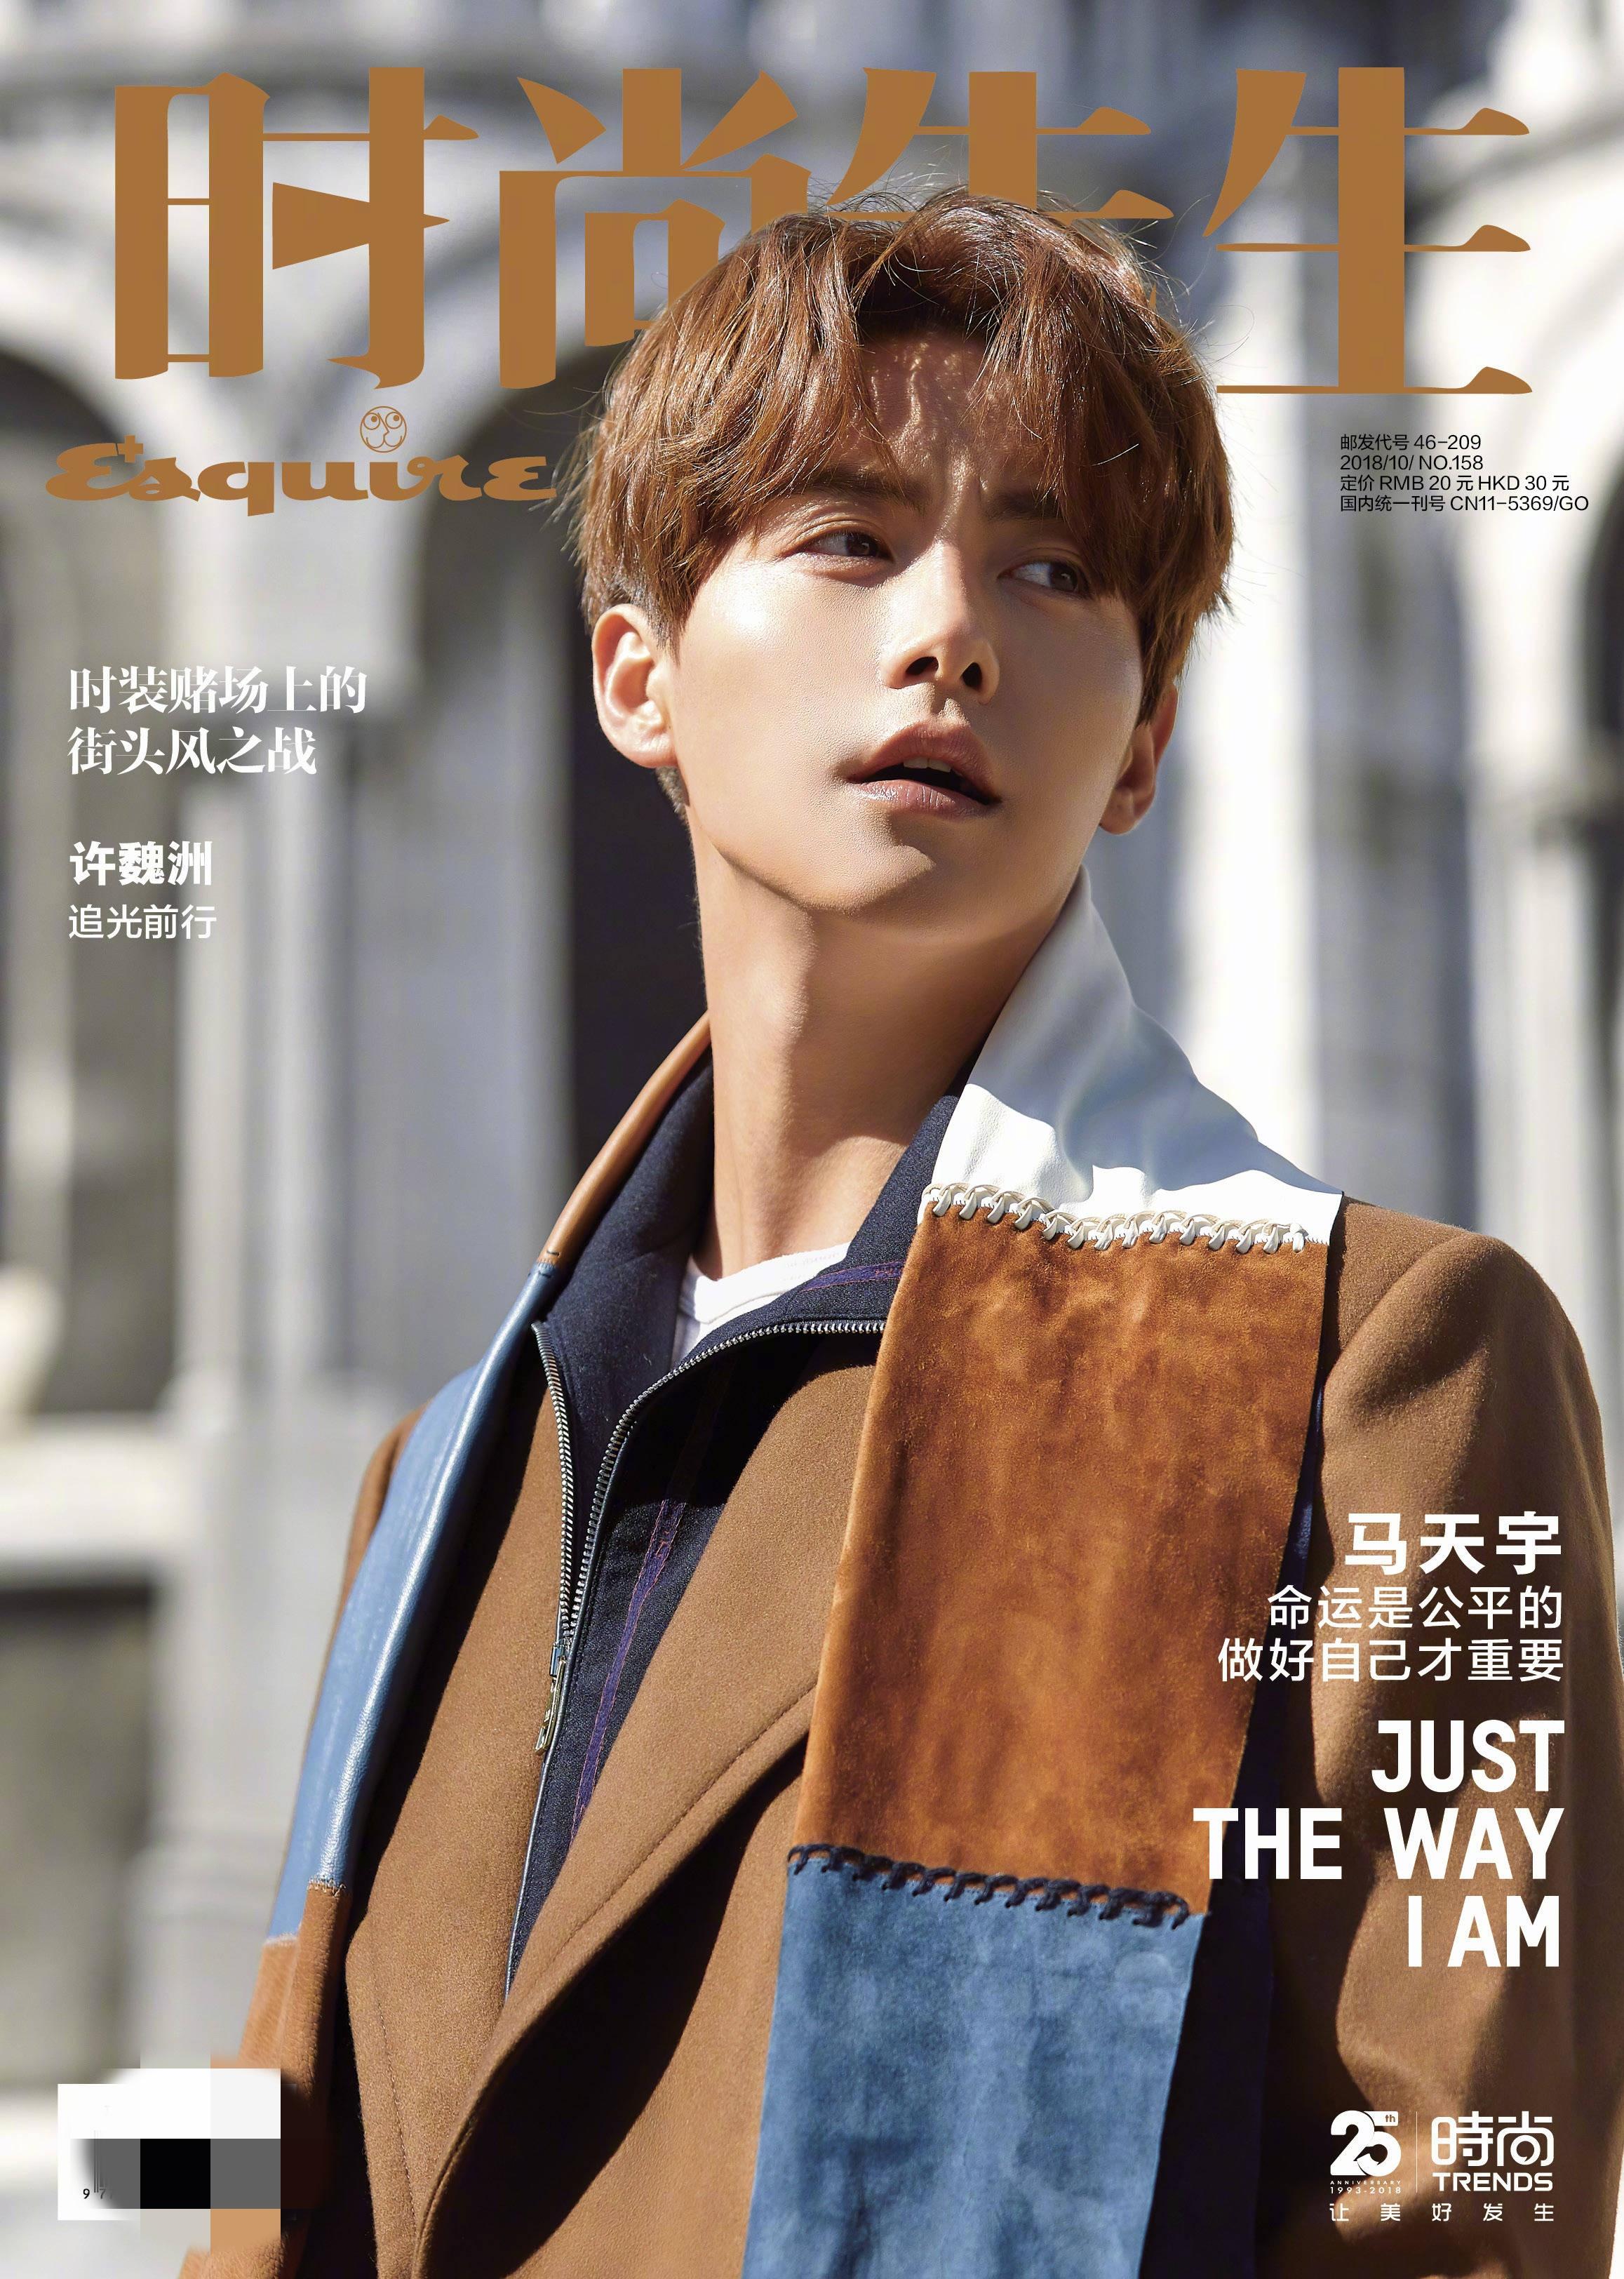 马天宇一直游走在时尚尖端,还多次登上《时尚先生esquire》杂志封面!